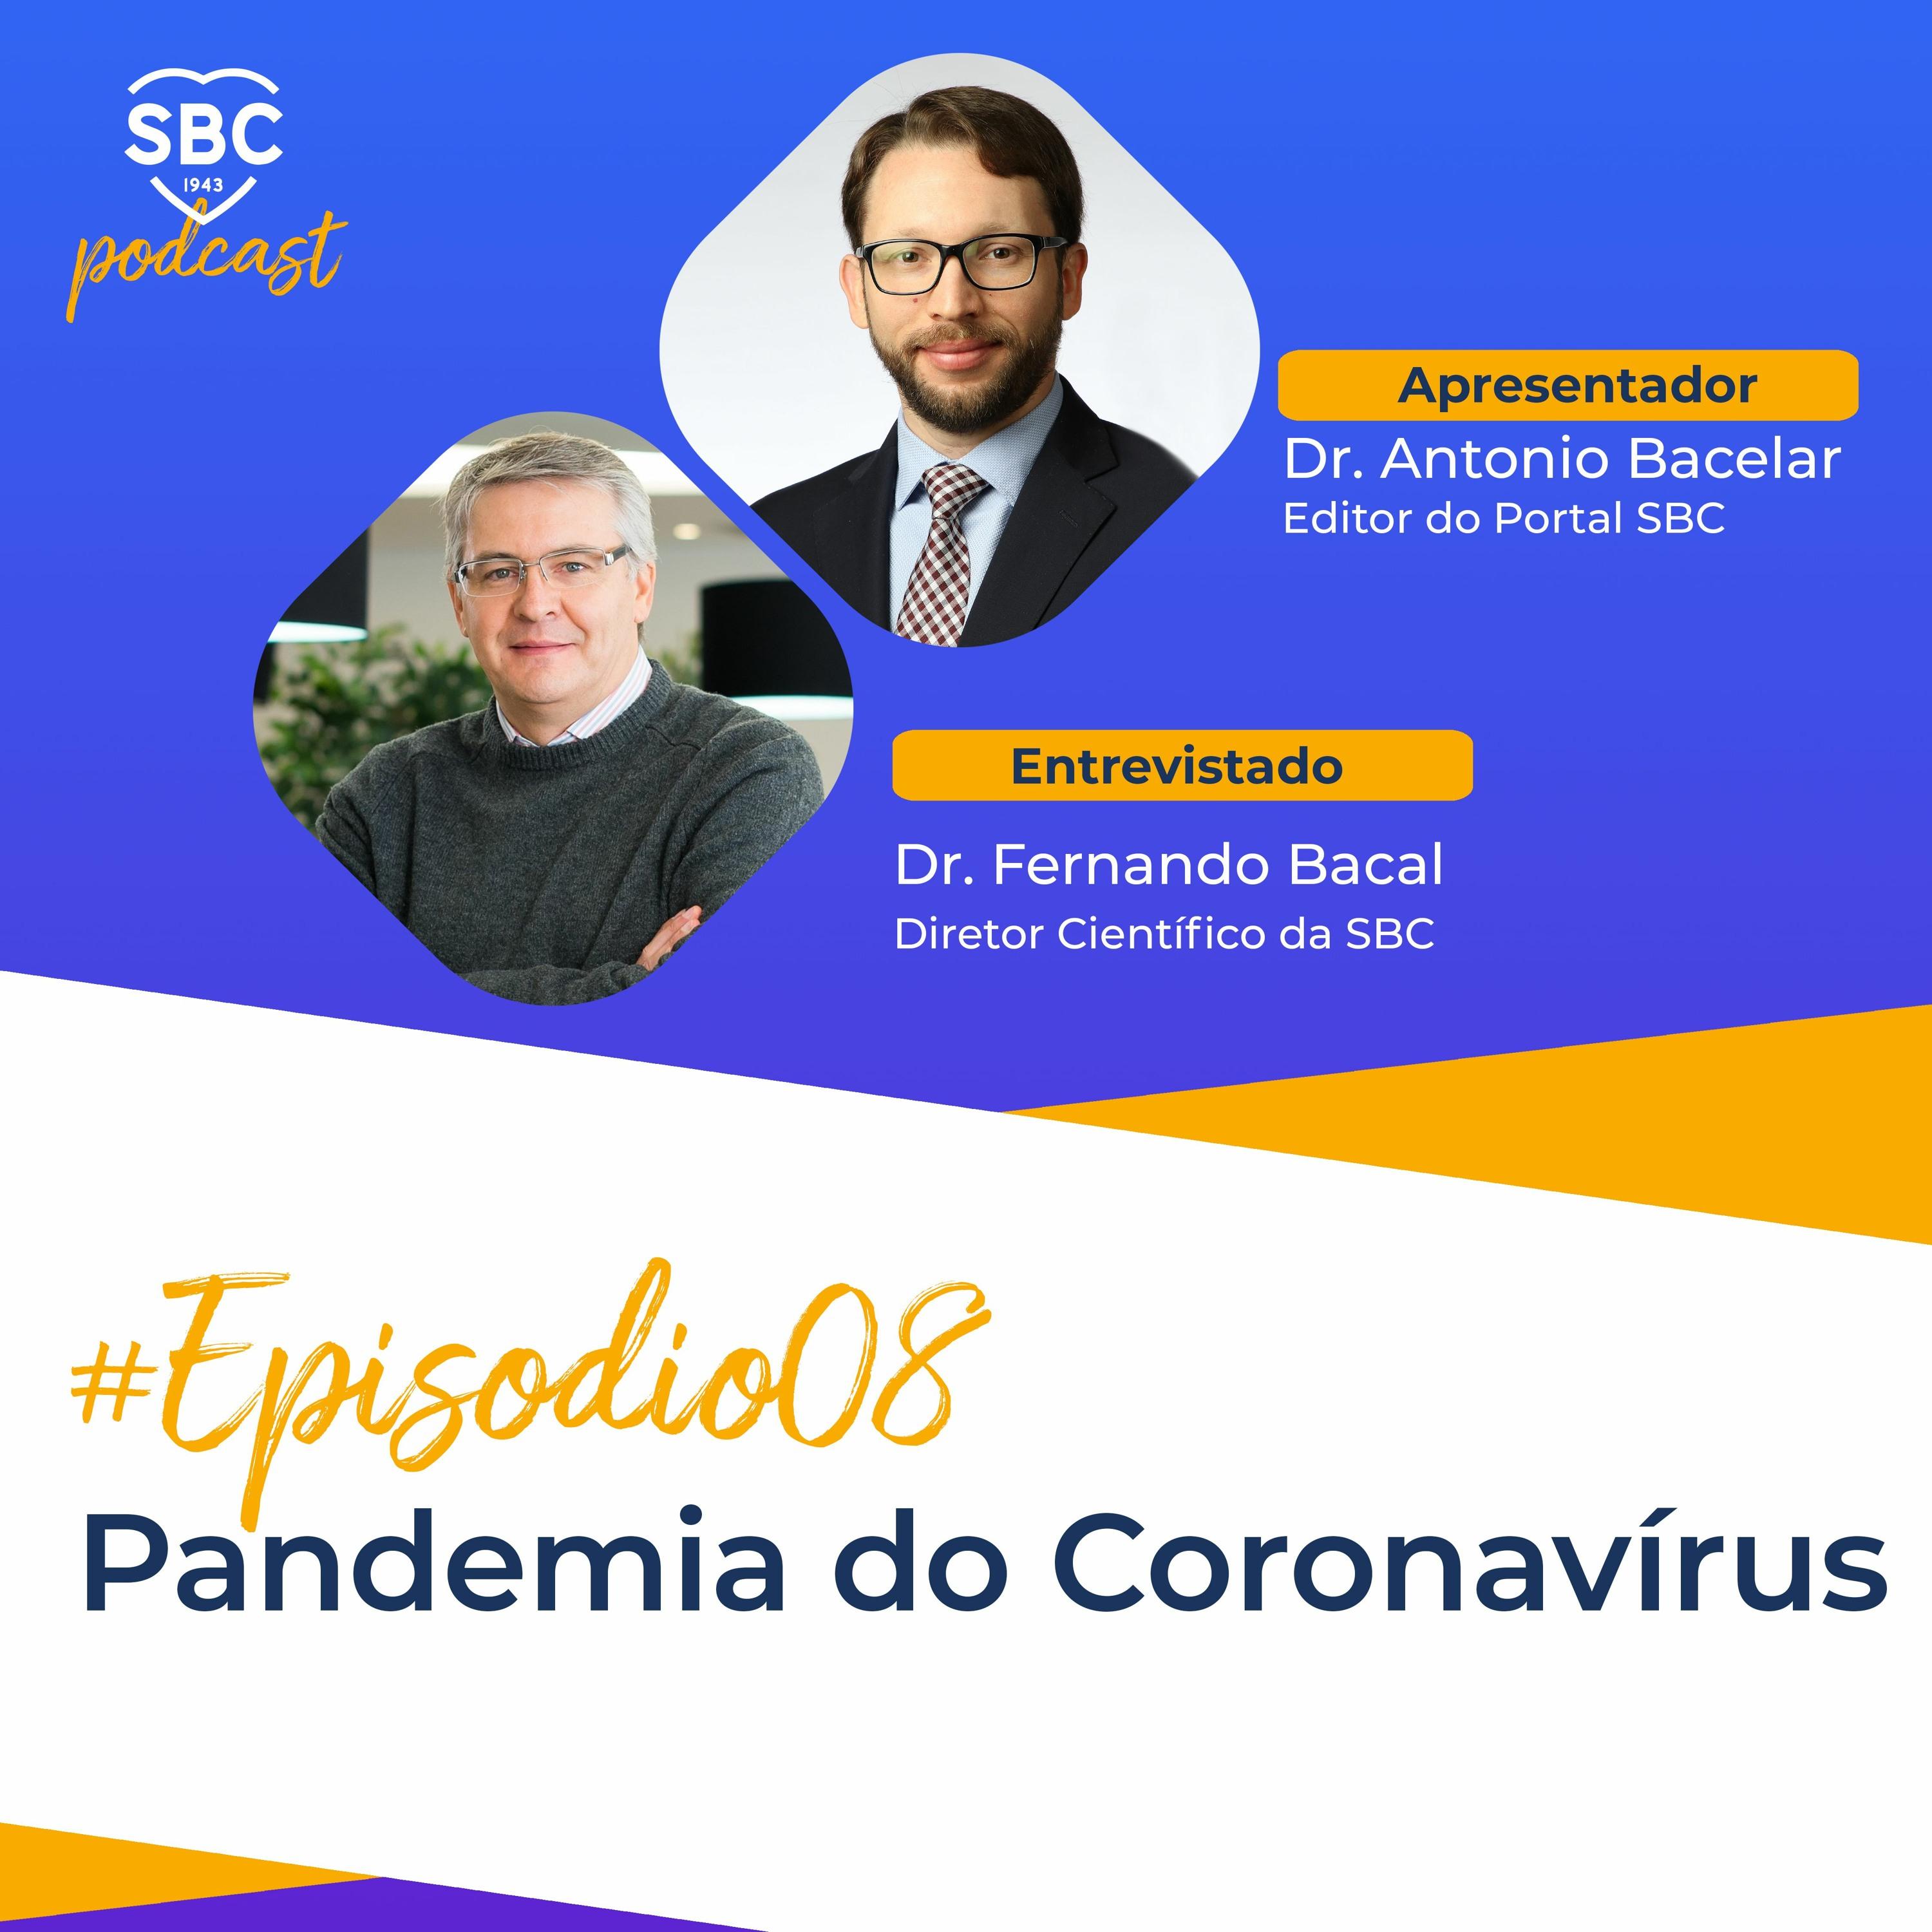 Neste episódio, o Dr. Antonio Bacelar e o Dr. Fernando Bacal falam sobre a pandemia do Coronavírus.